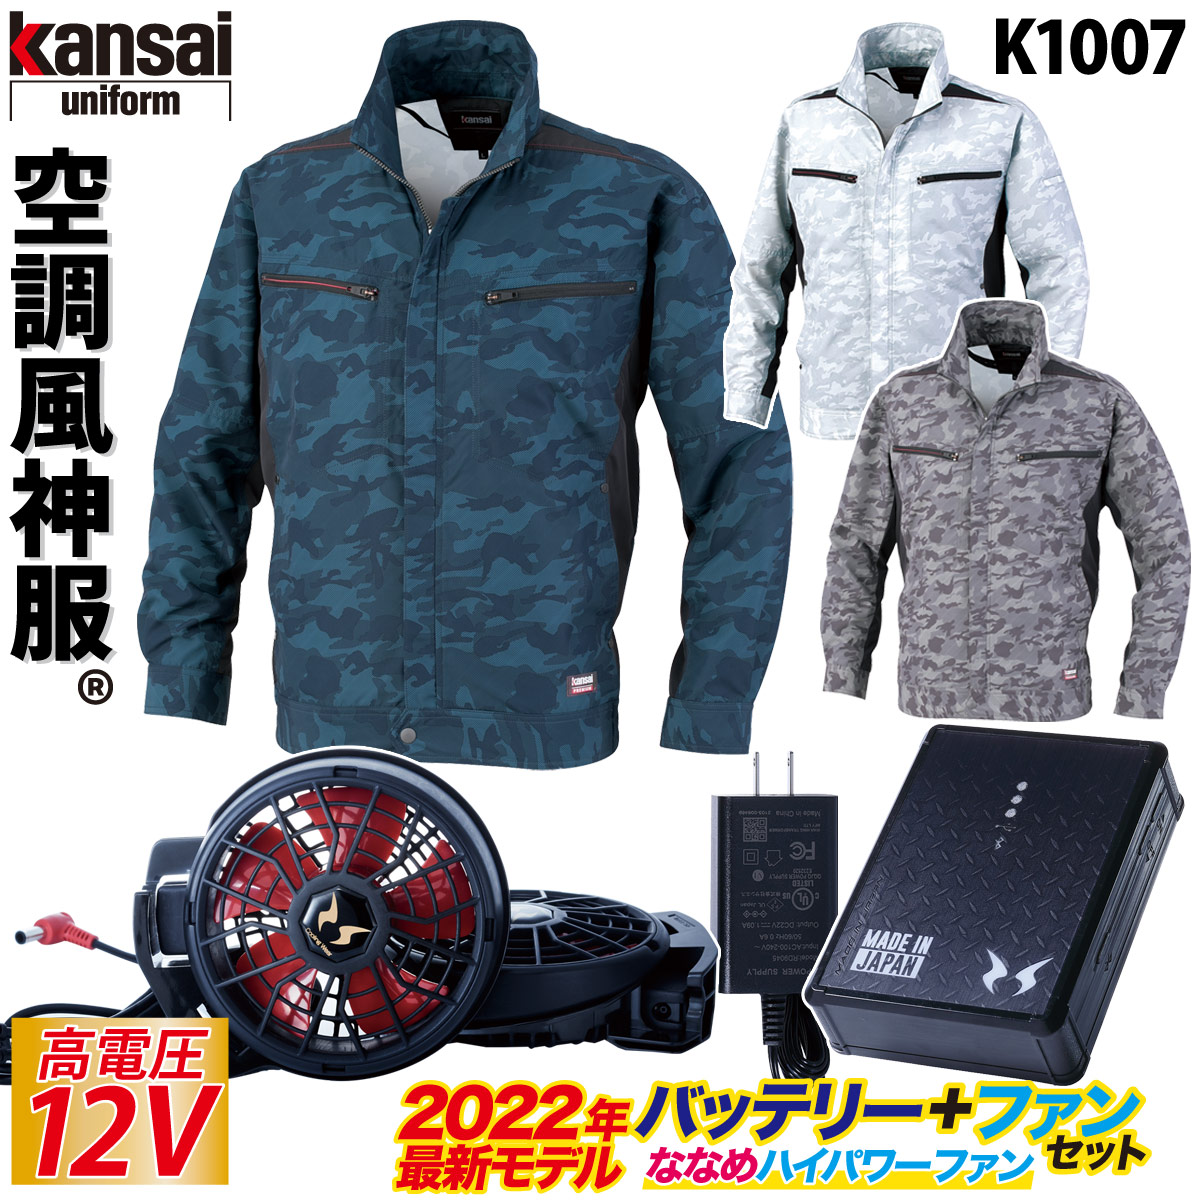 限定空調風神服 KANSAI 大川被服 長袖 ジャケット 01100 色:ホワイト サイズ:LL ジャンパー、ブルゾン